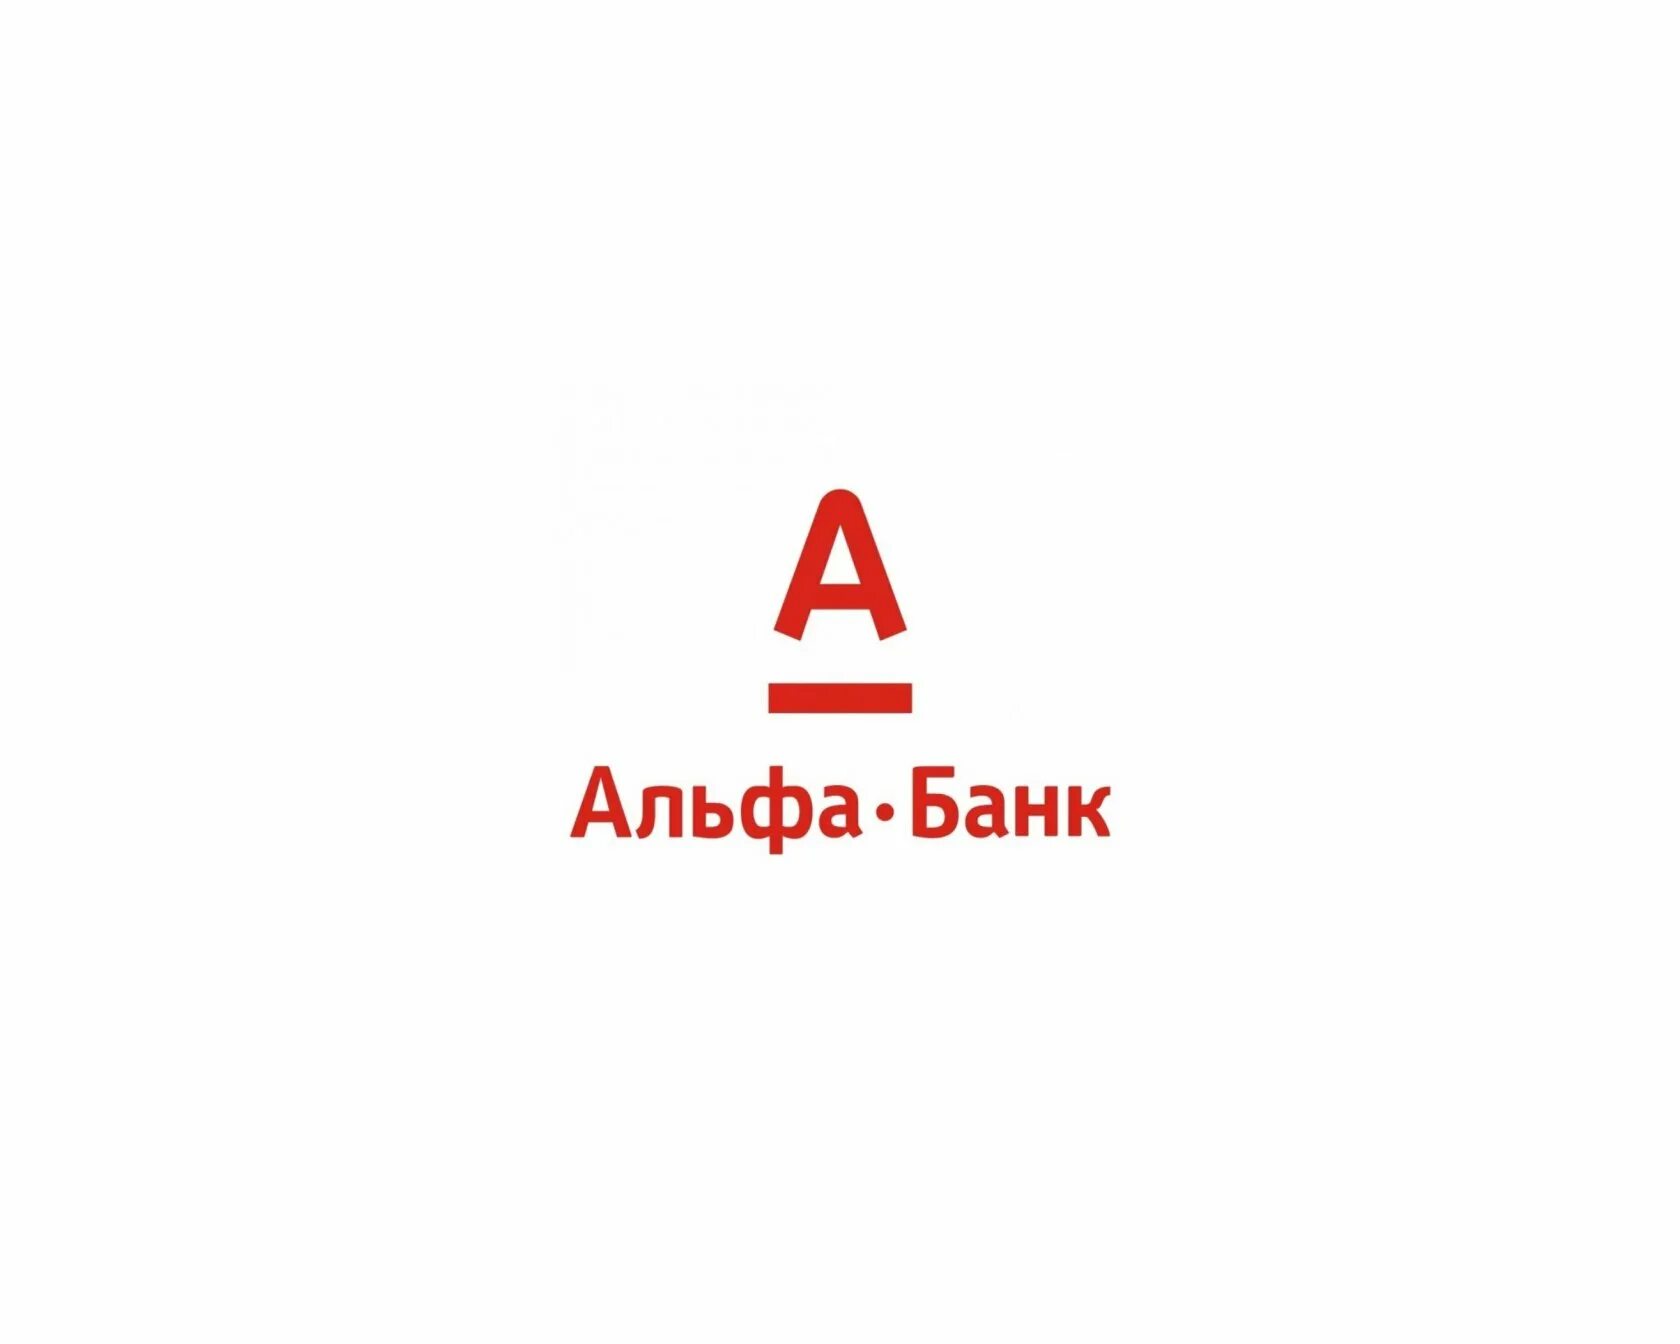 Эмблема Альфа банка. Альфа банк логотип на белом фоне. Алеф банк. Альфа банк иллюстрации. Альфа банк шуя